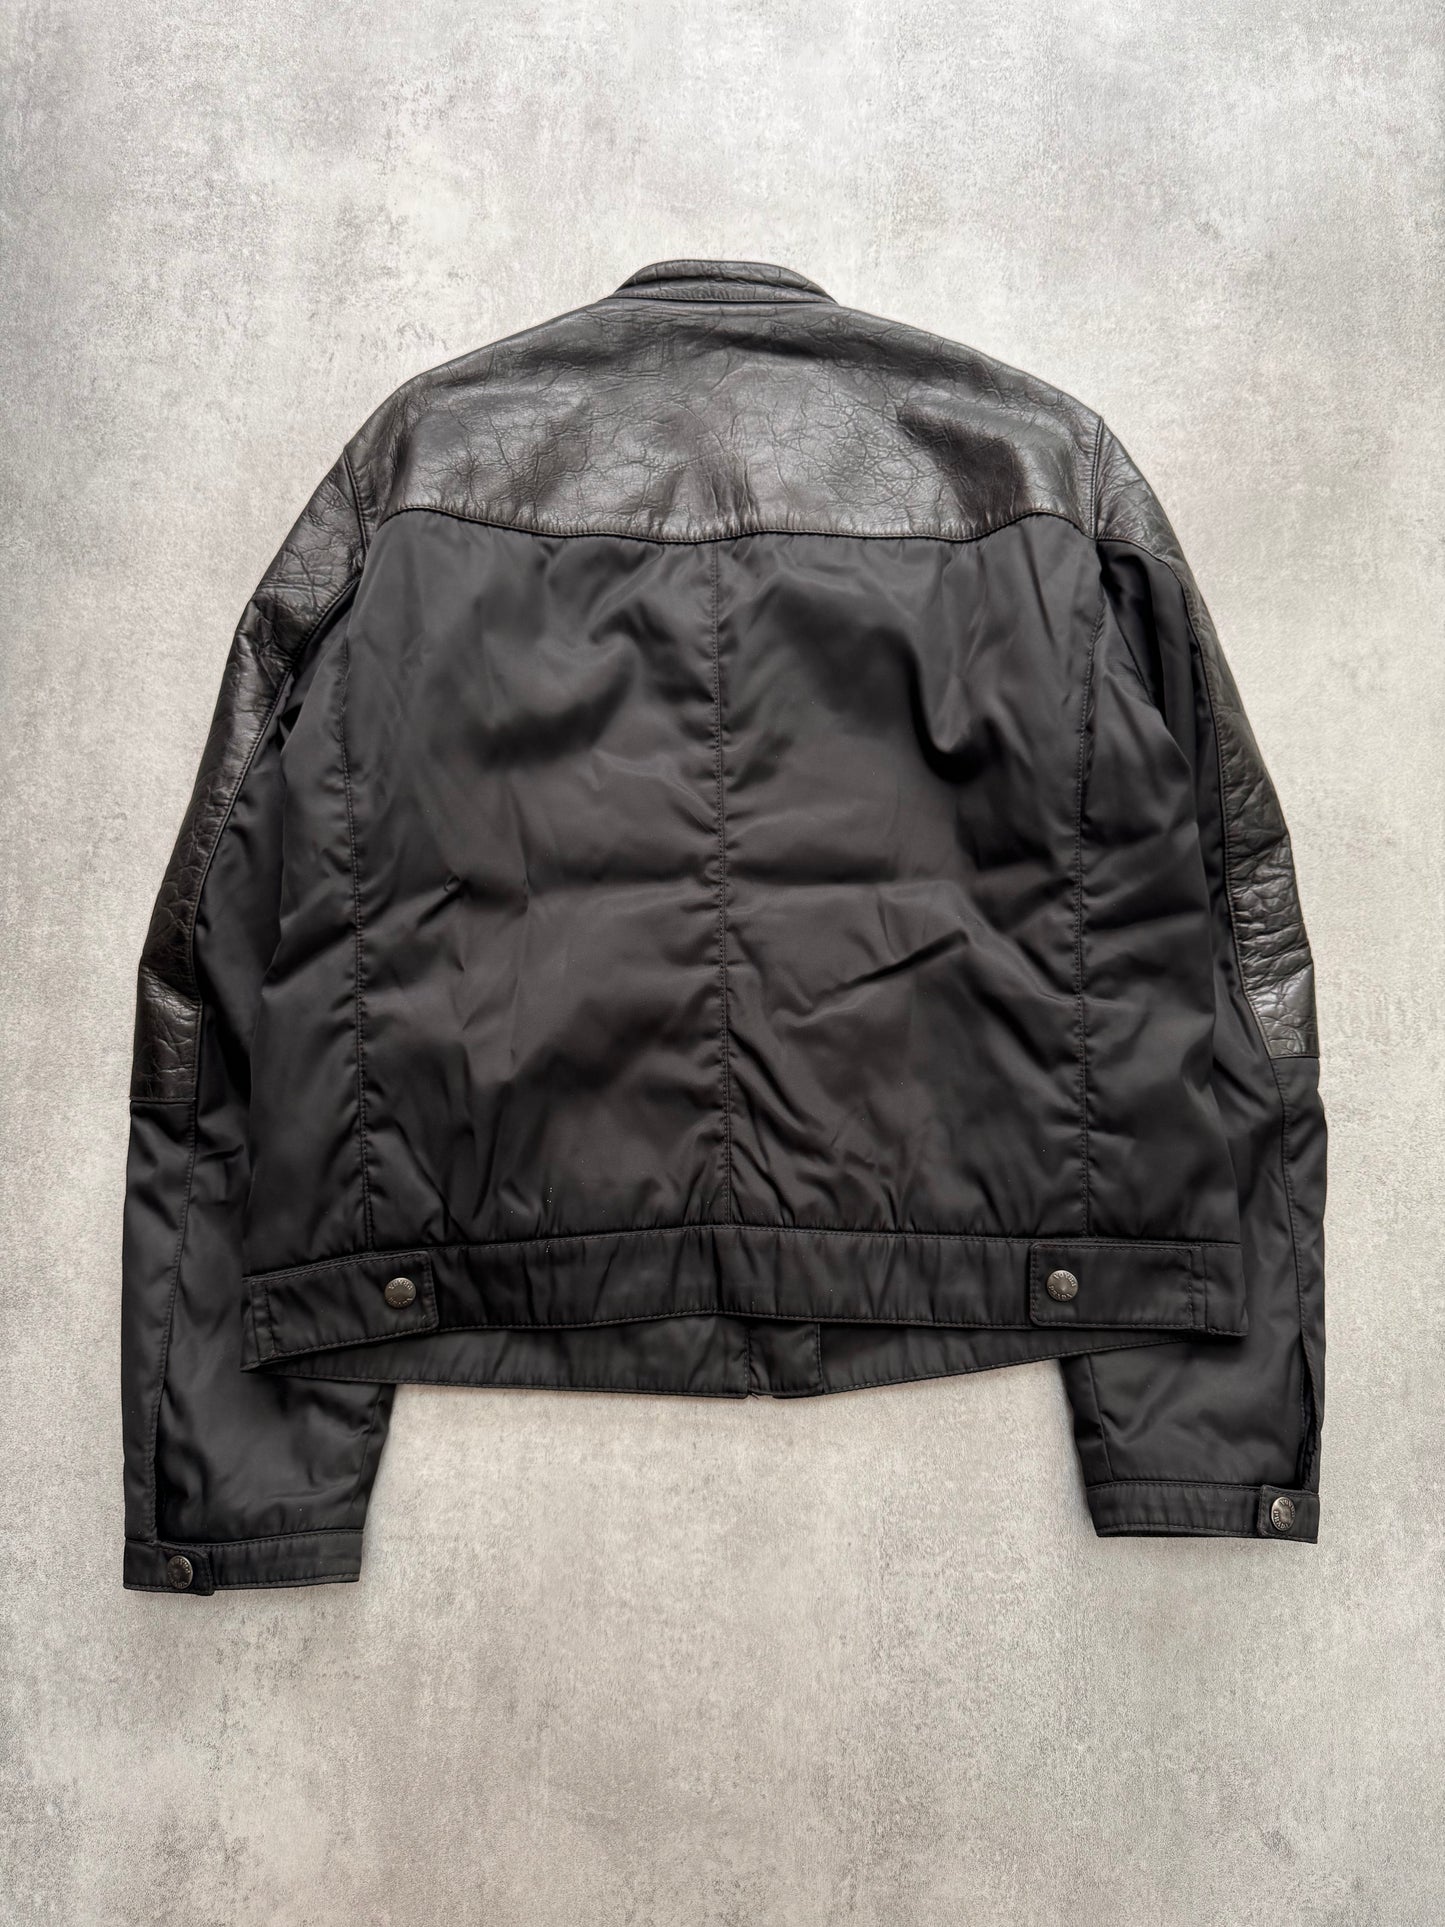 AW2011 Prada Hybrid Leather Jacket (L)